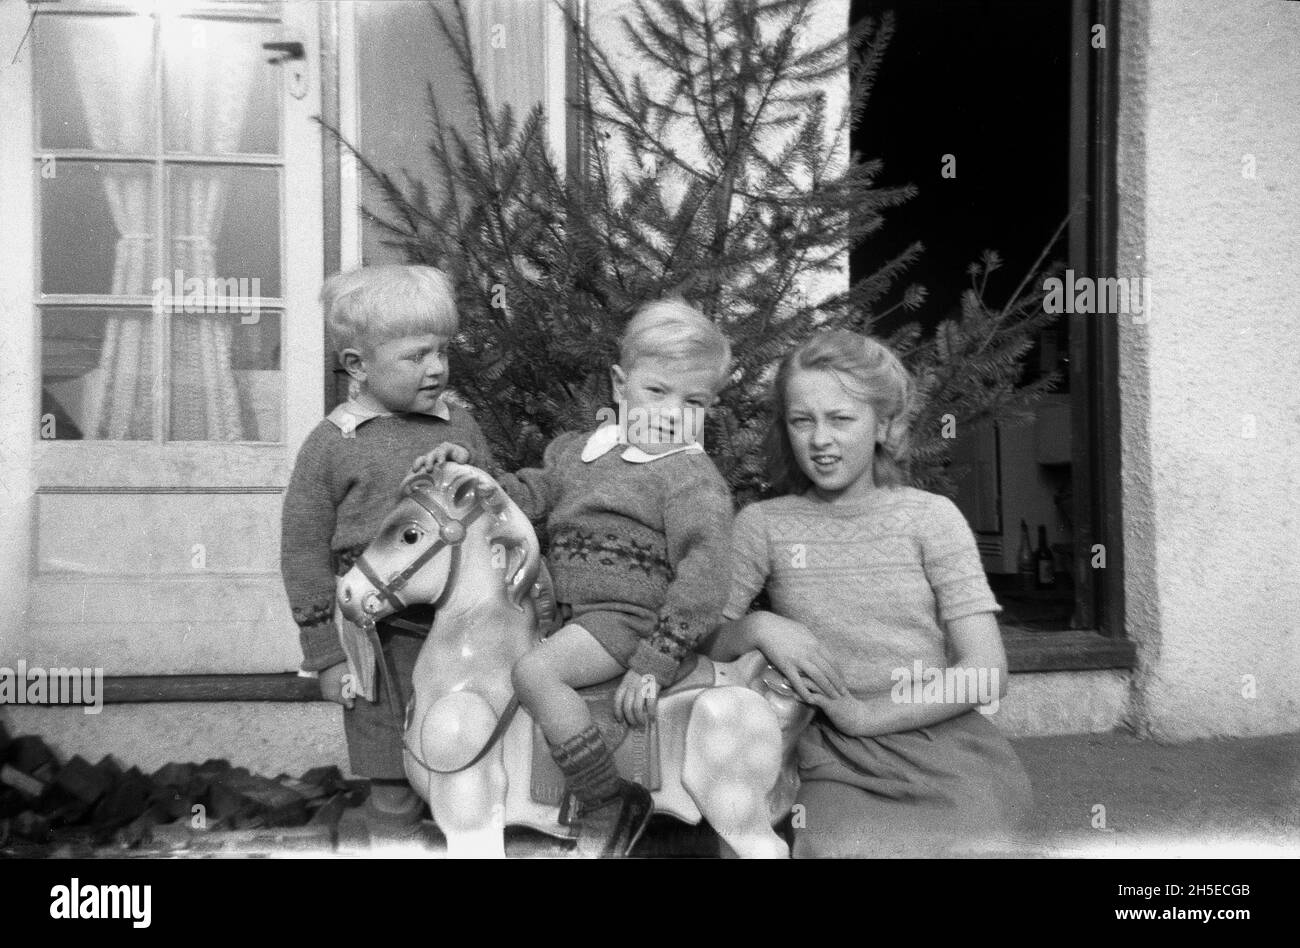 1940, historique, à l'extérieur de l'arrière d'une maison, un petit garçon assis sur un cheval à bascule jouet, avec son frère et sa sœur à côté de lui, Angleterre, Royaume-Uni, peut-être un cadeau de Noël, car il y a un arbre de Noël incliné contre le mur près de la porte arrière. Banque D'Images